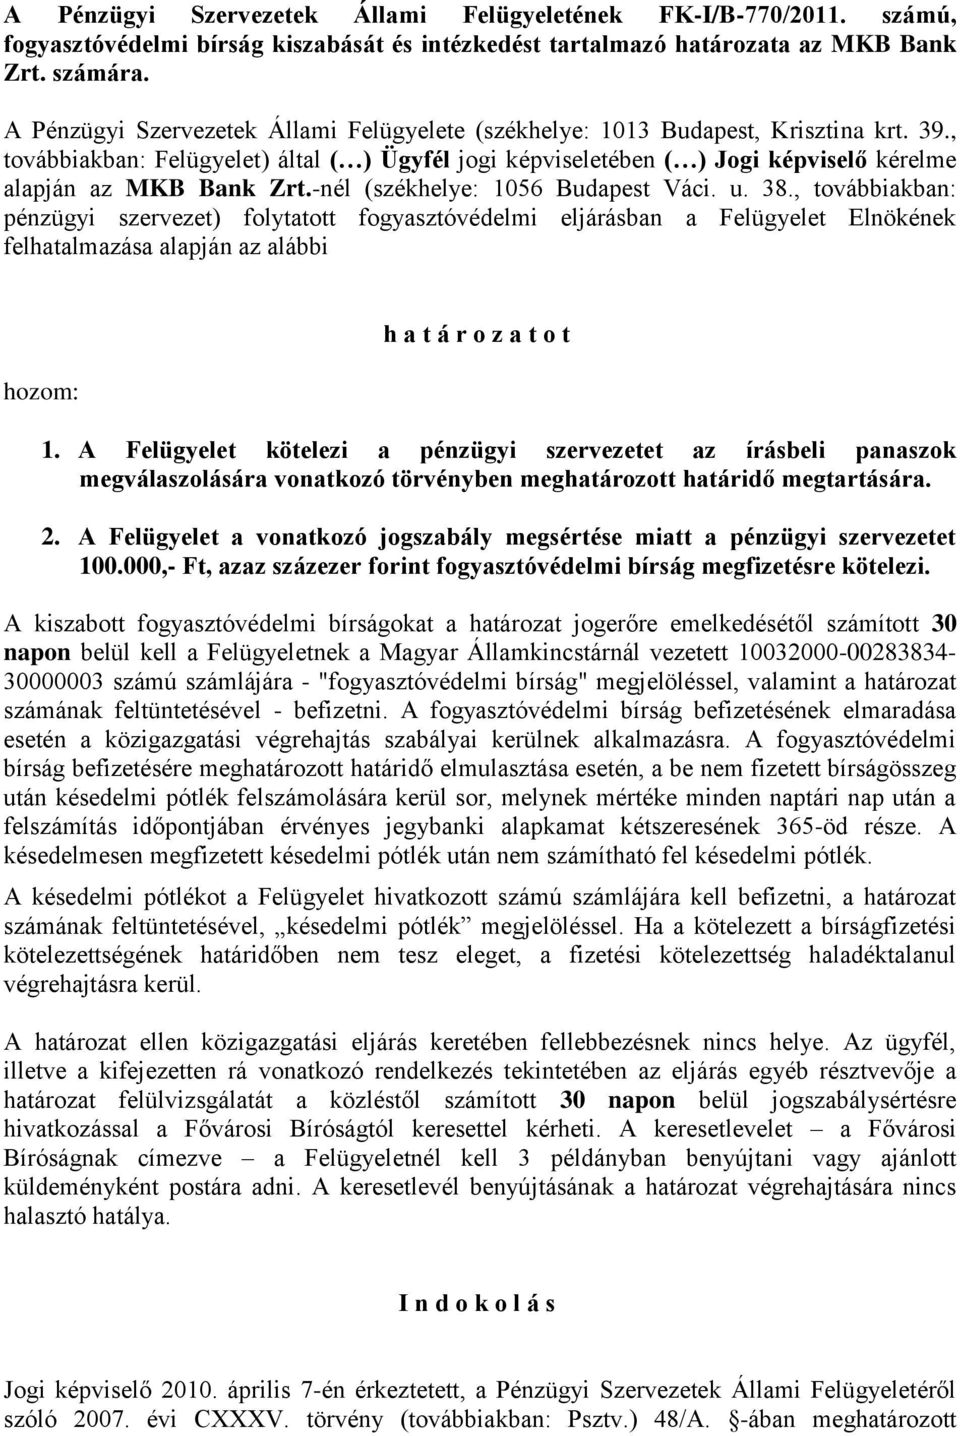 , továbbiakban: Felügyelet) által ( ) Ügyfél jogi képviseletében ( ) Jogi képviselő kérelme alapján az MKB Bank Zrt.-nél (székhelye: 1056 Budapest Váci. u. 38.